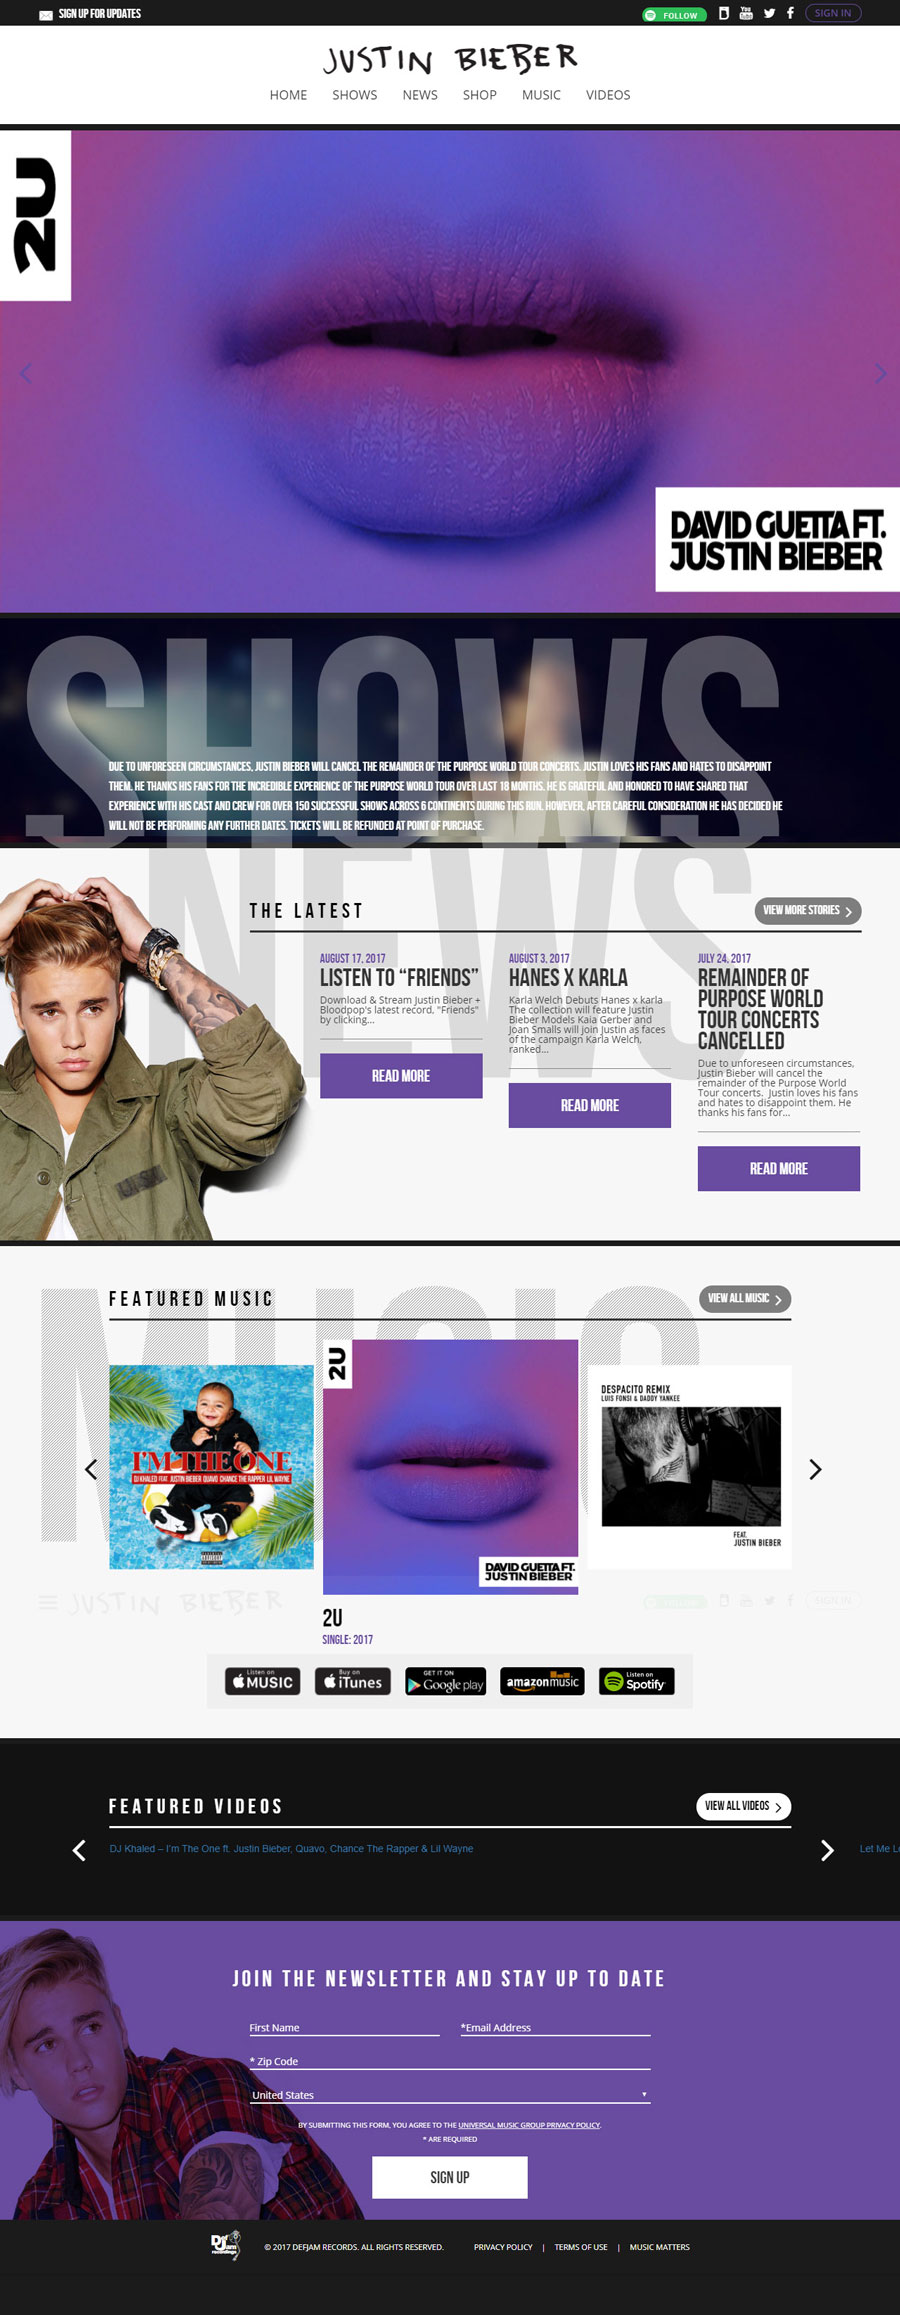 Justin Bieber Singer Celebrity Website Design